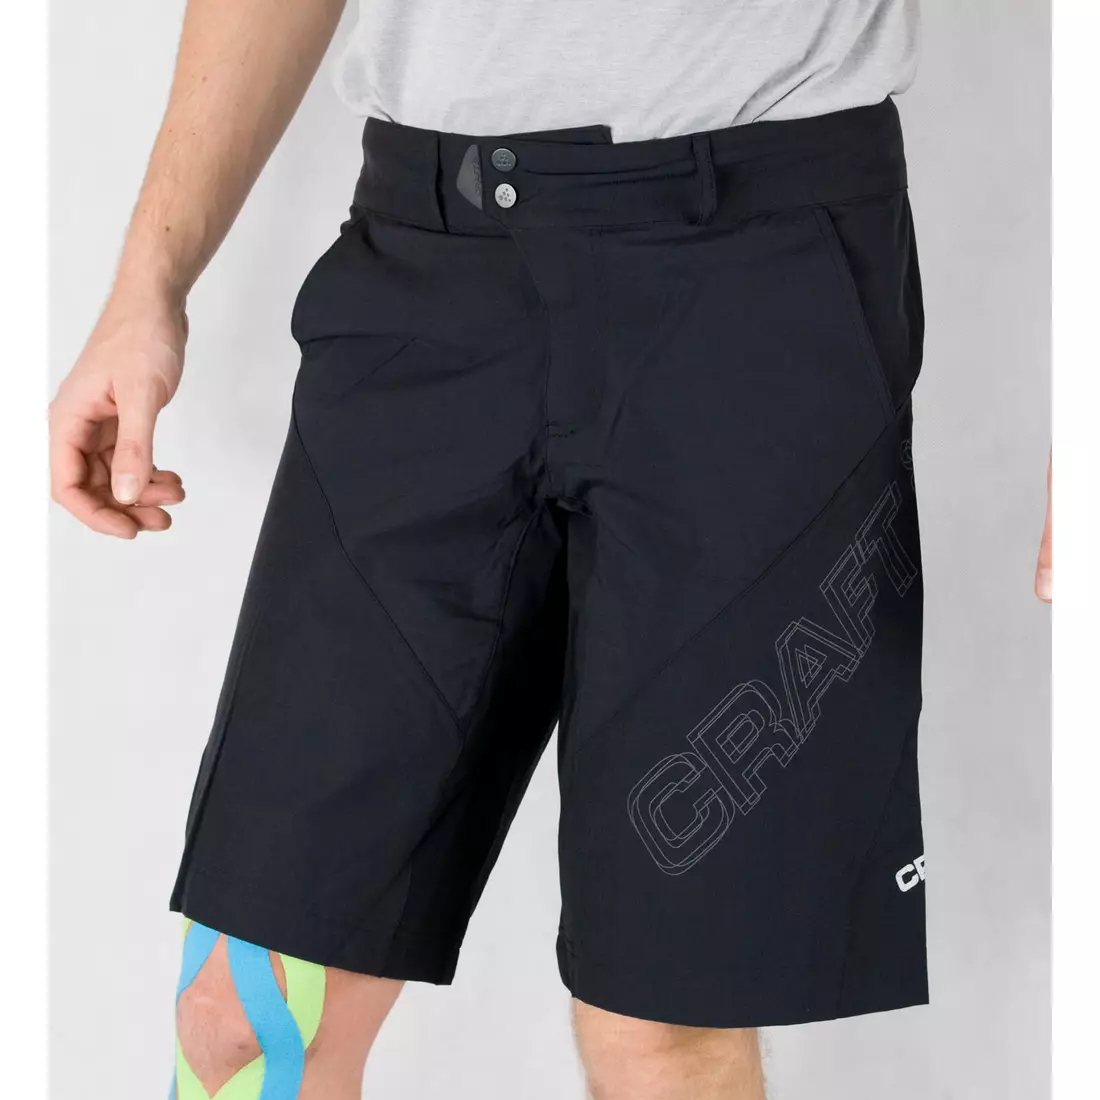 CRAFT ACTIVE BIKE - pantaloni scurți pentru ciclism bărbați 1900700-9999, culoare: negru